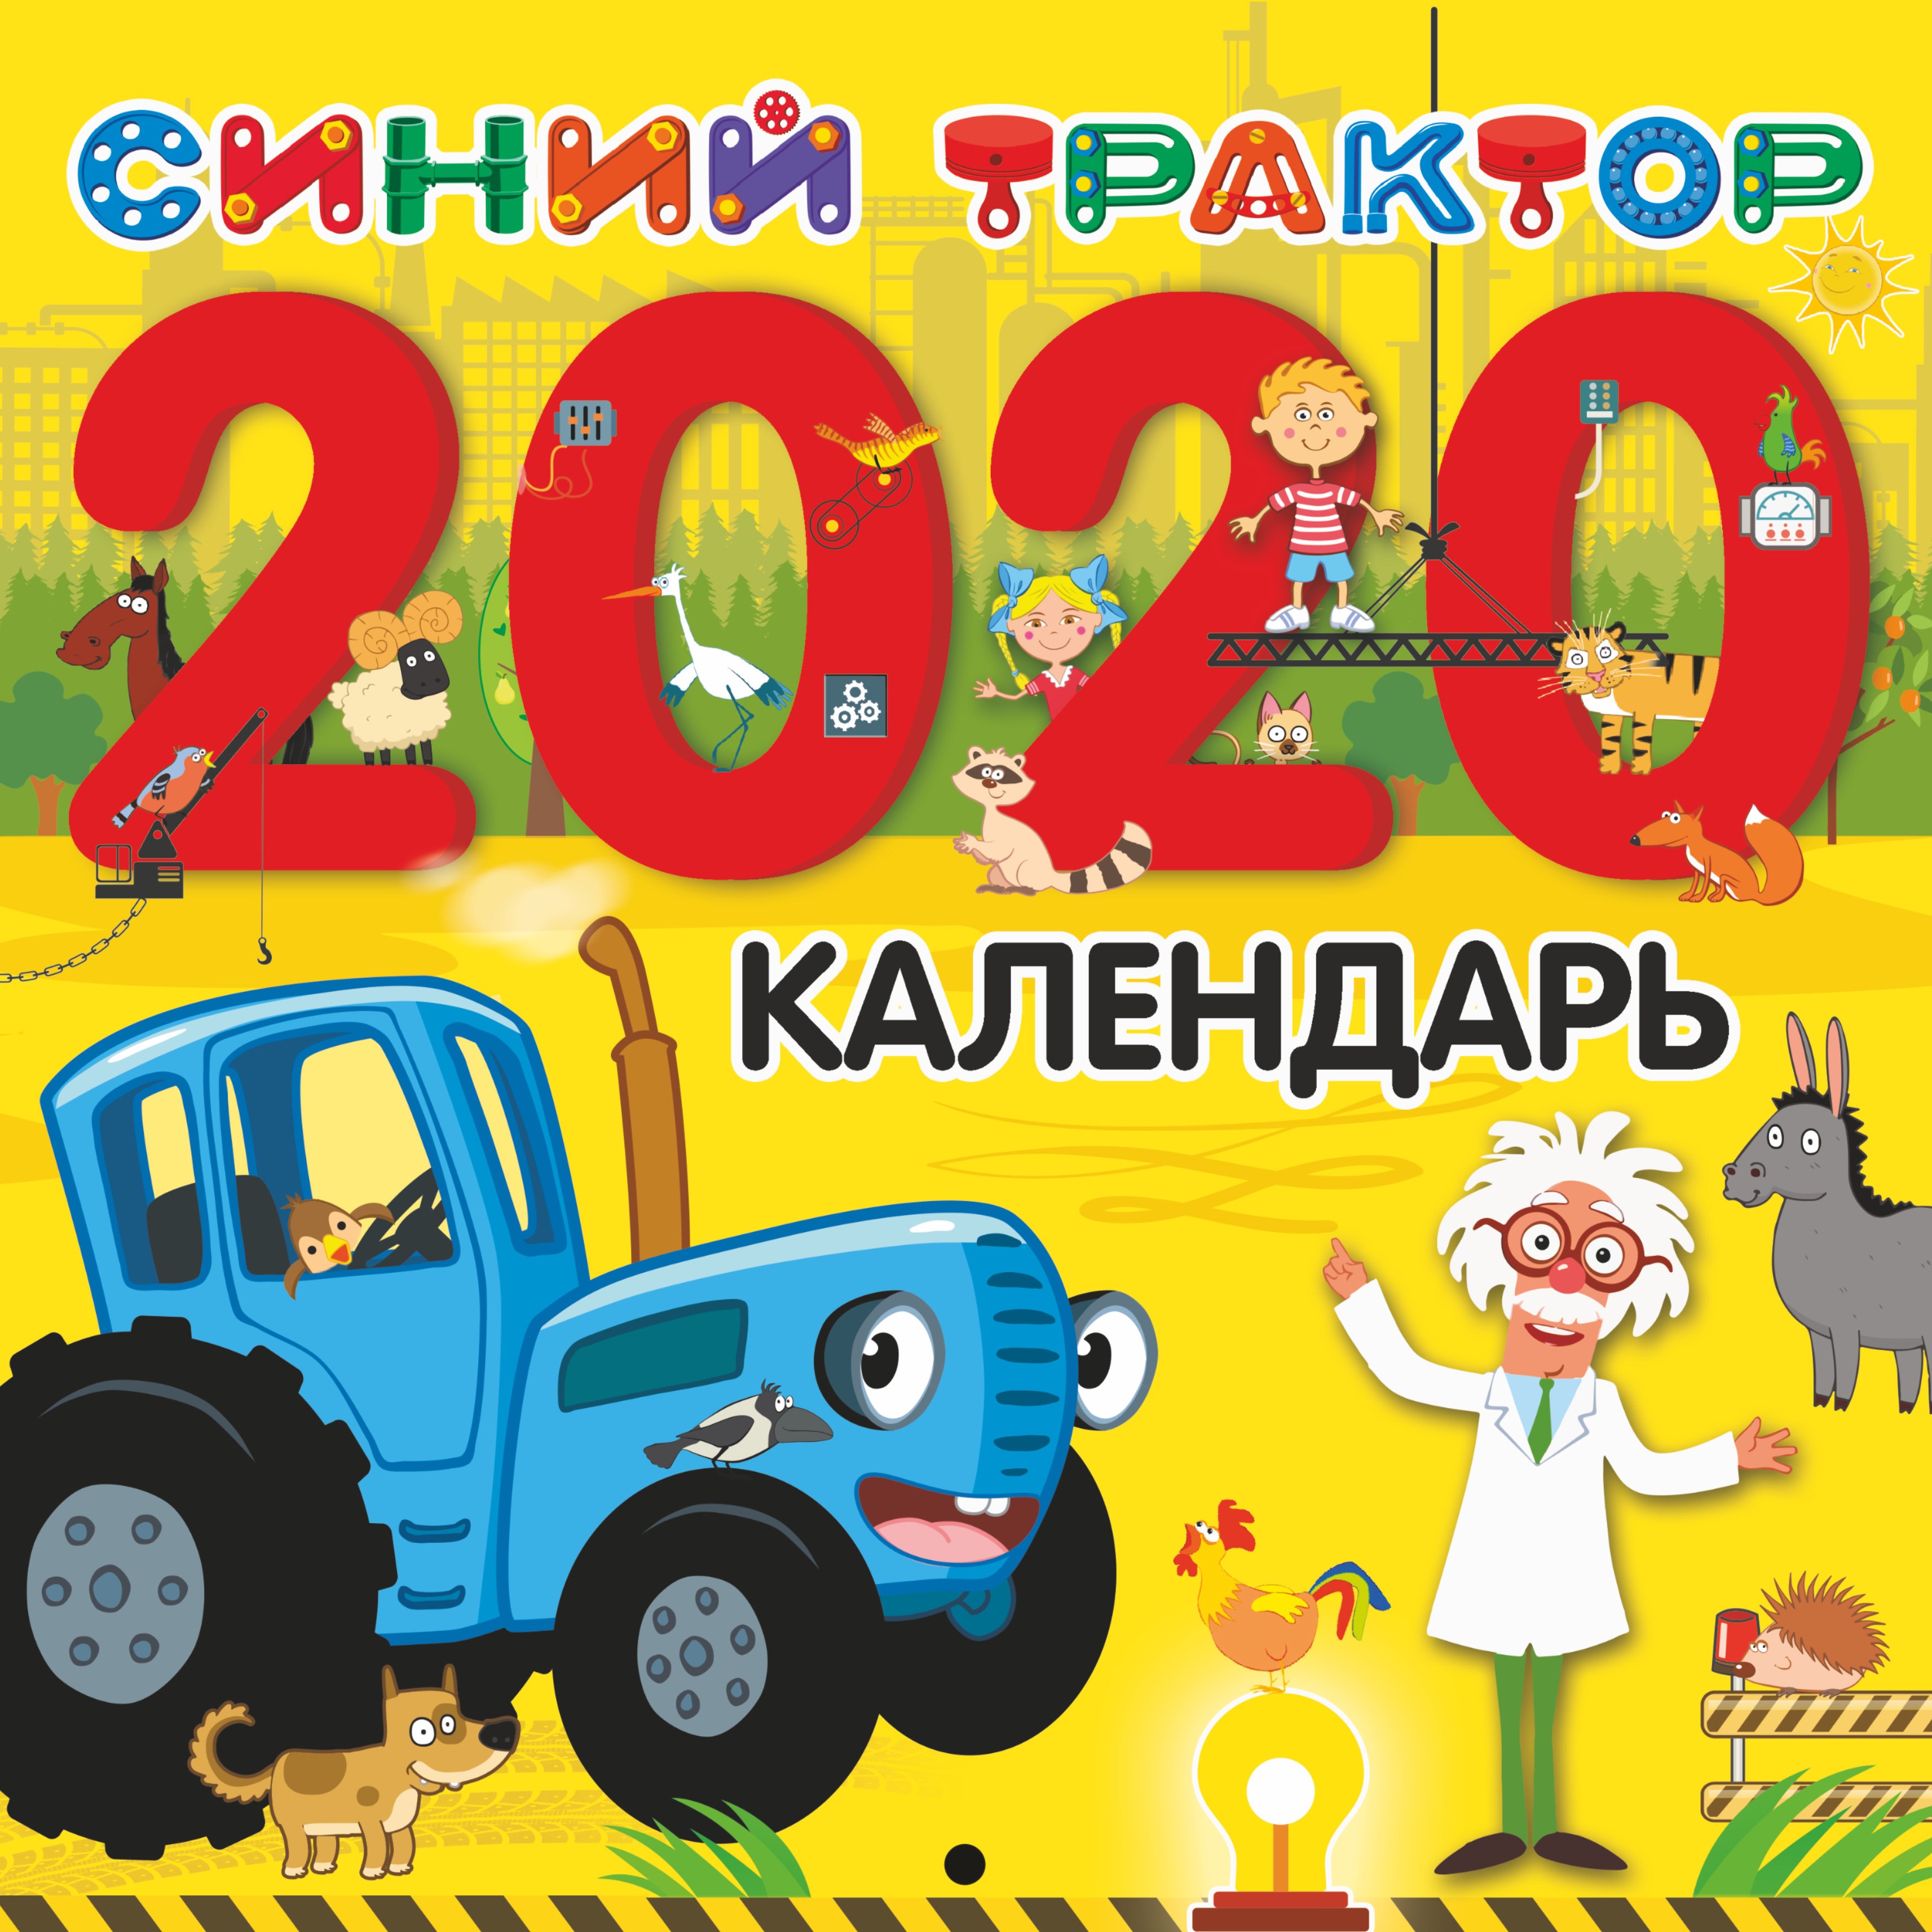  Календарь Синий трактор 2020 г. - страница 0